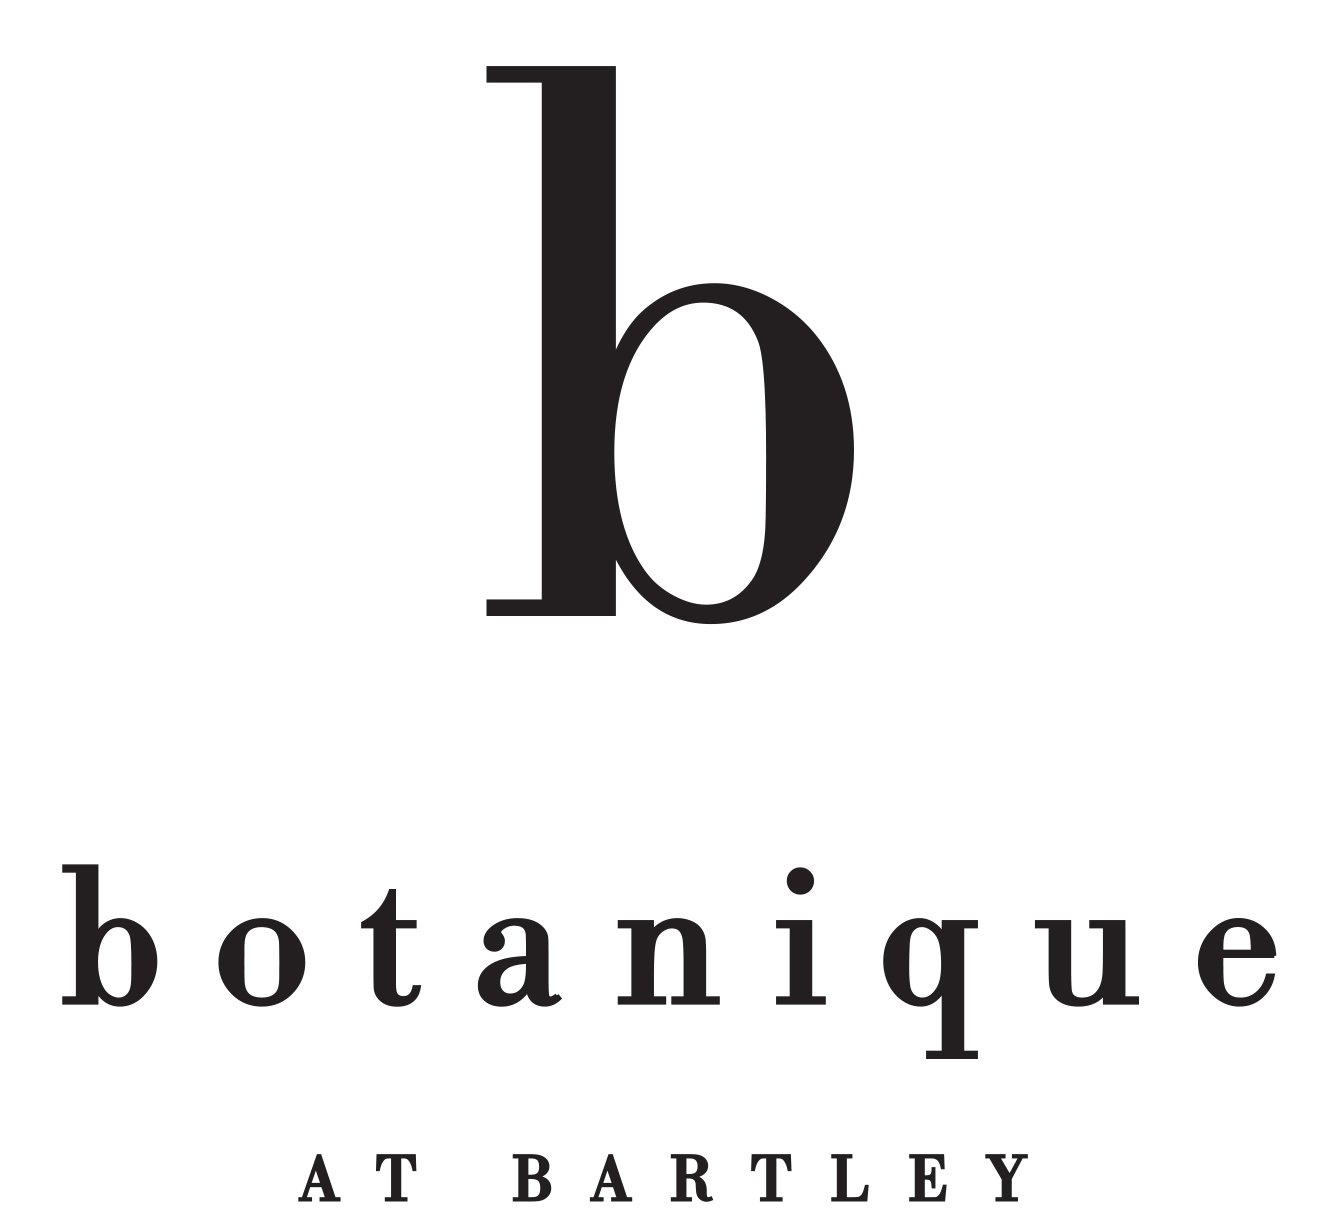 Botanique at Bartley 绿盛邨 (D19)